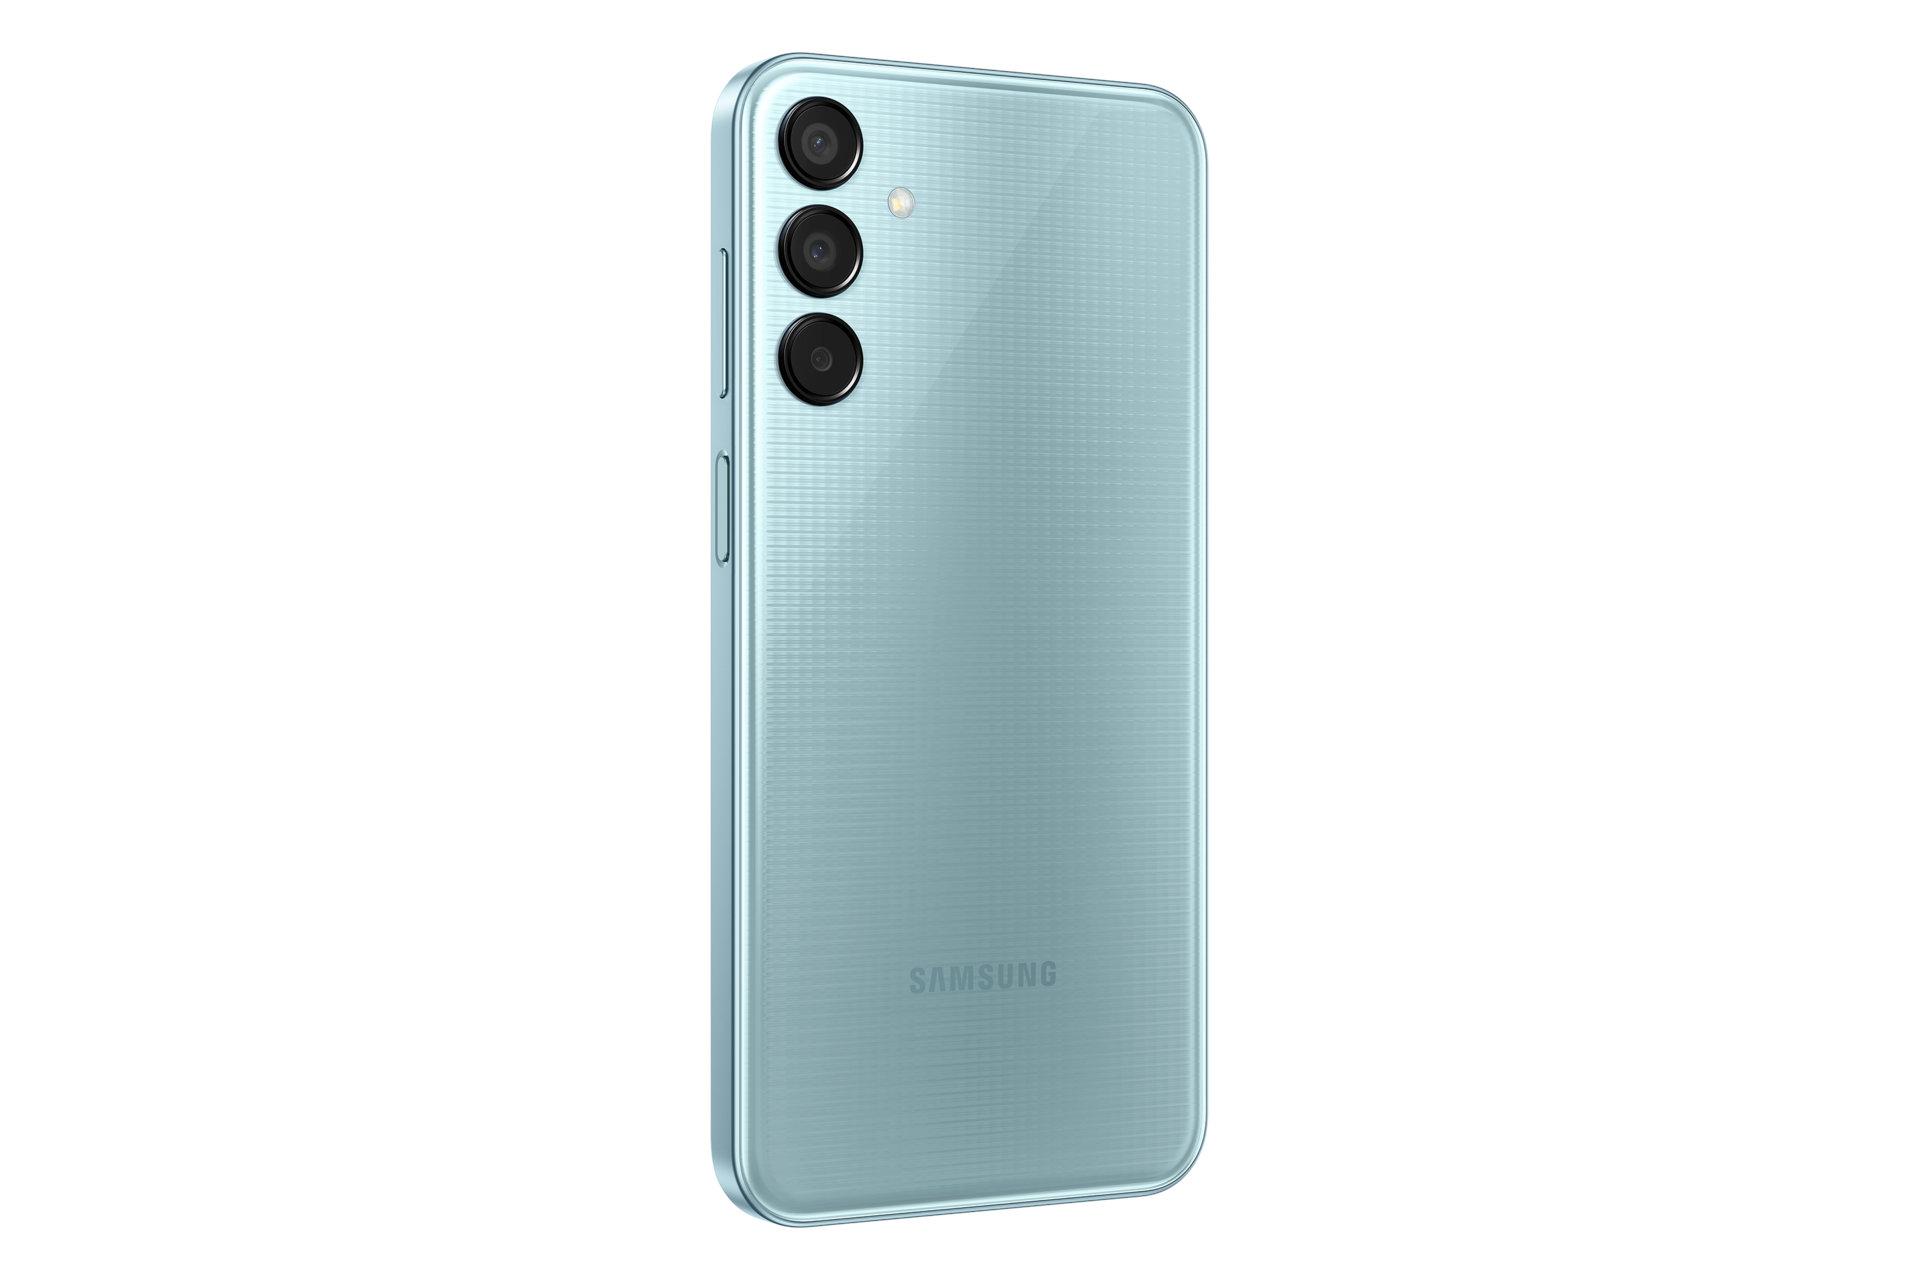 سمت چپ پنل پشت گوشی موبایل گلکسی M15 سامسونگ آبی روشن / Samsung Galaxy M15